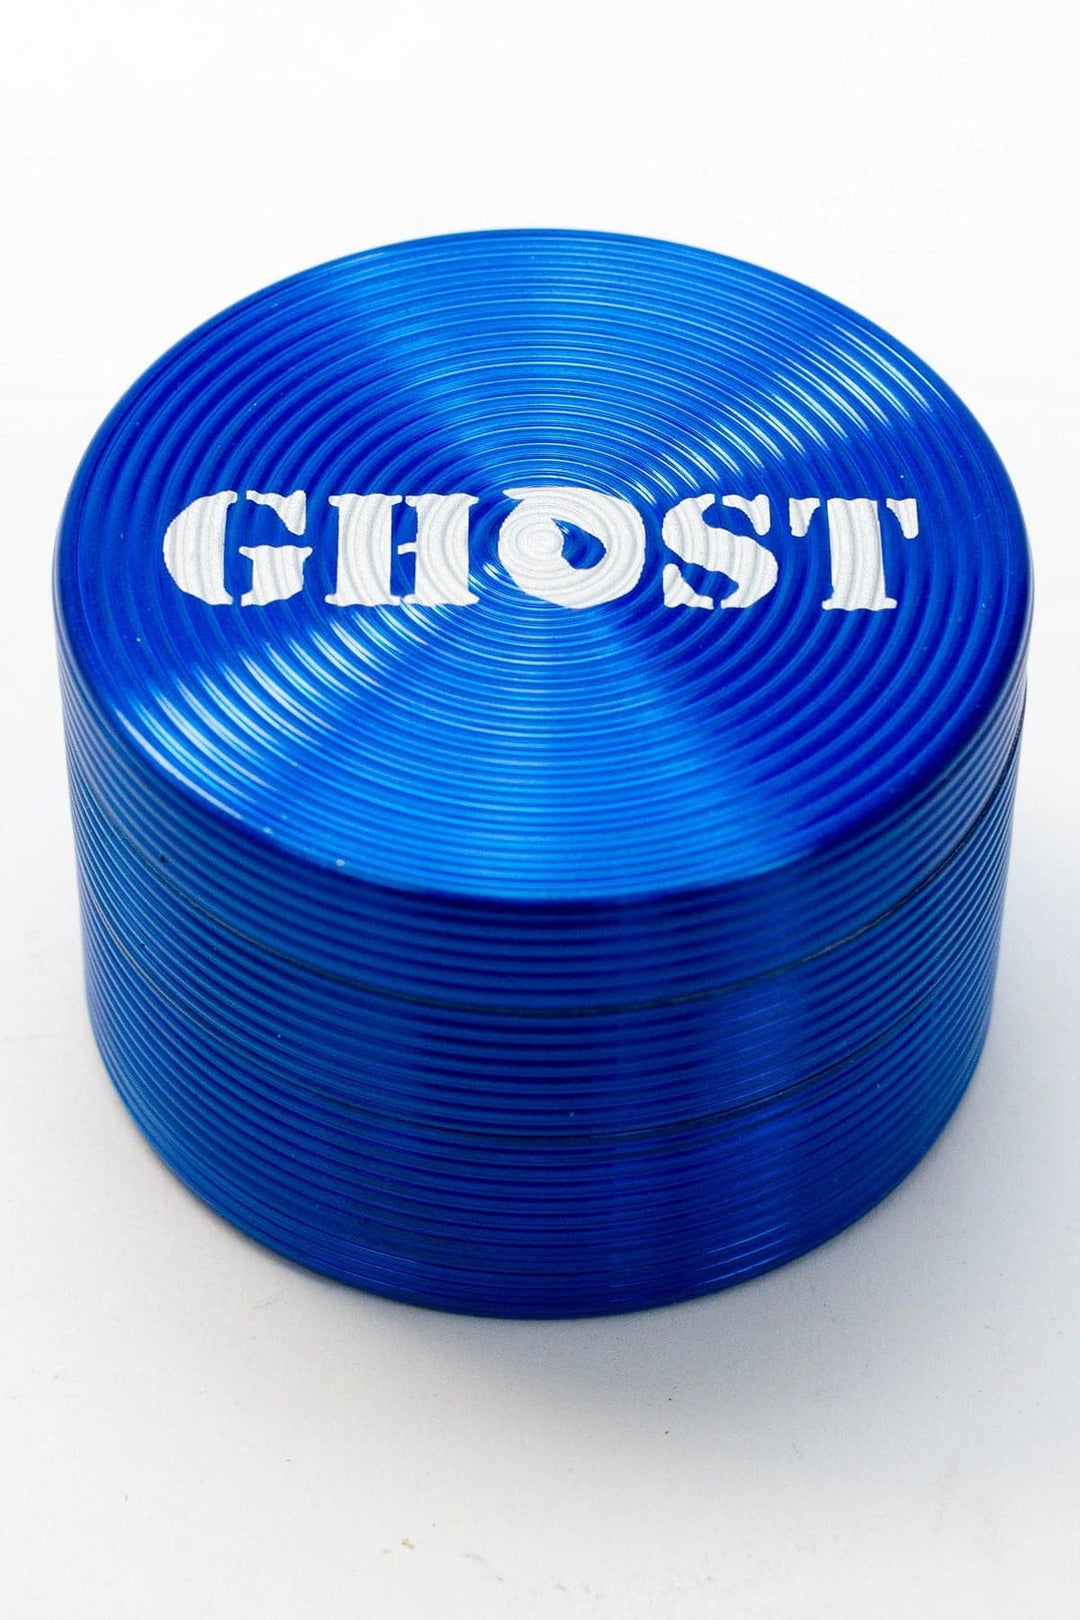 Ghost 4 parts aluminum grinder_11